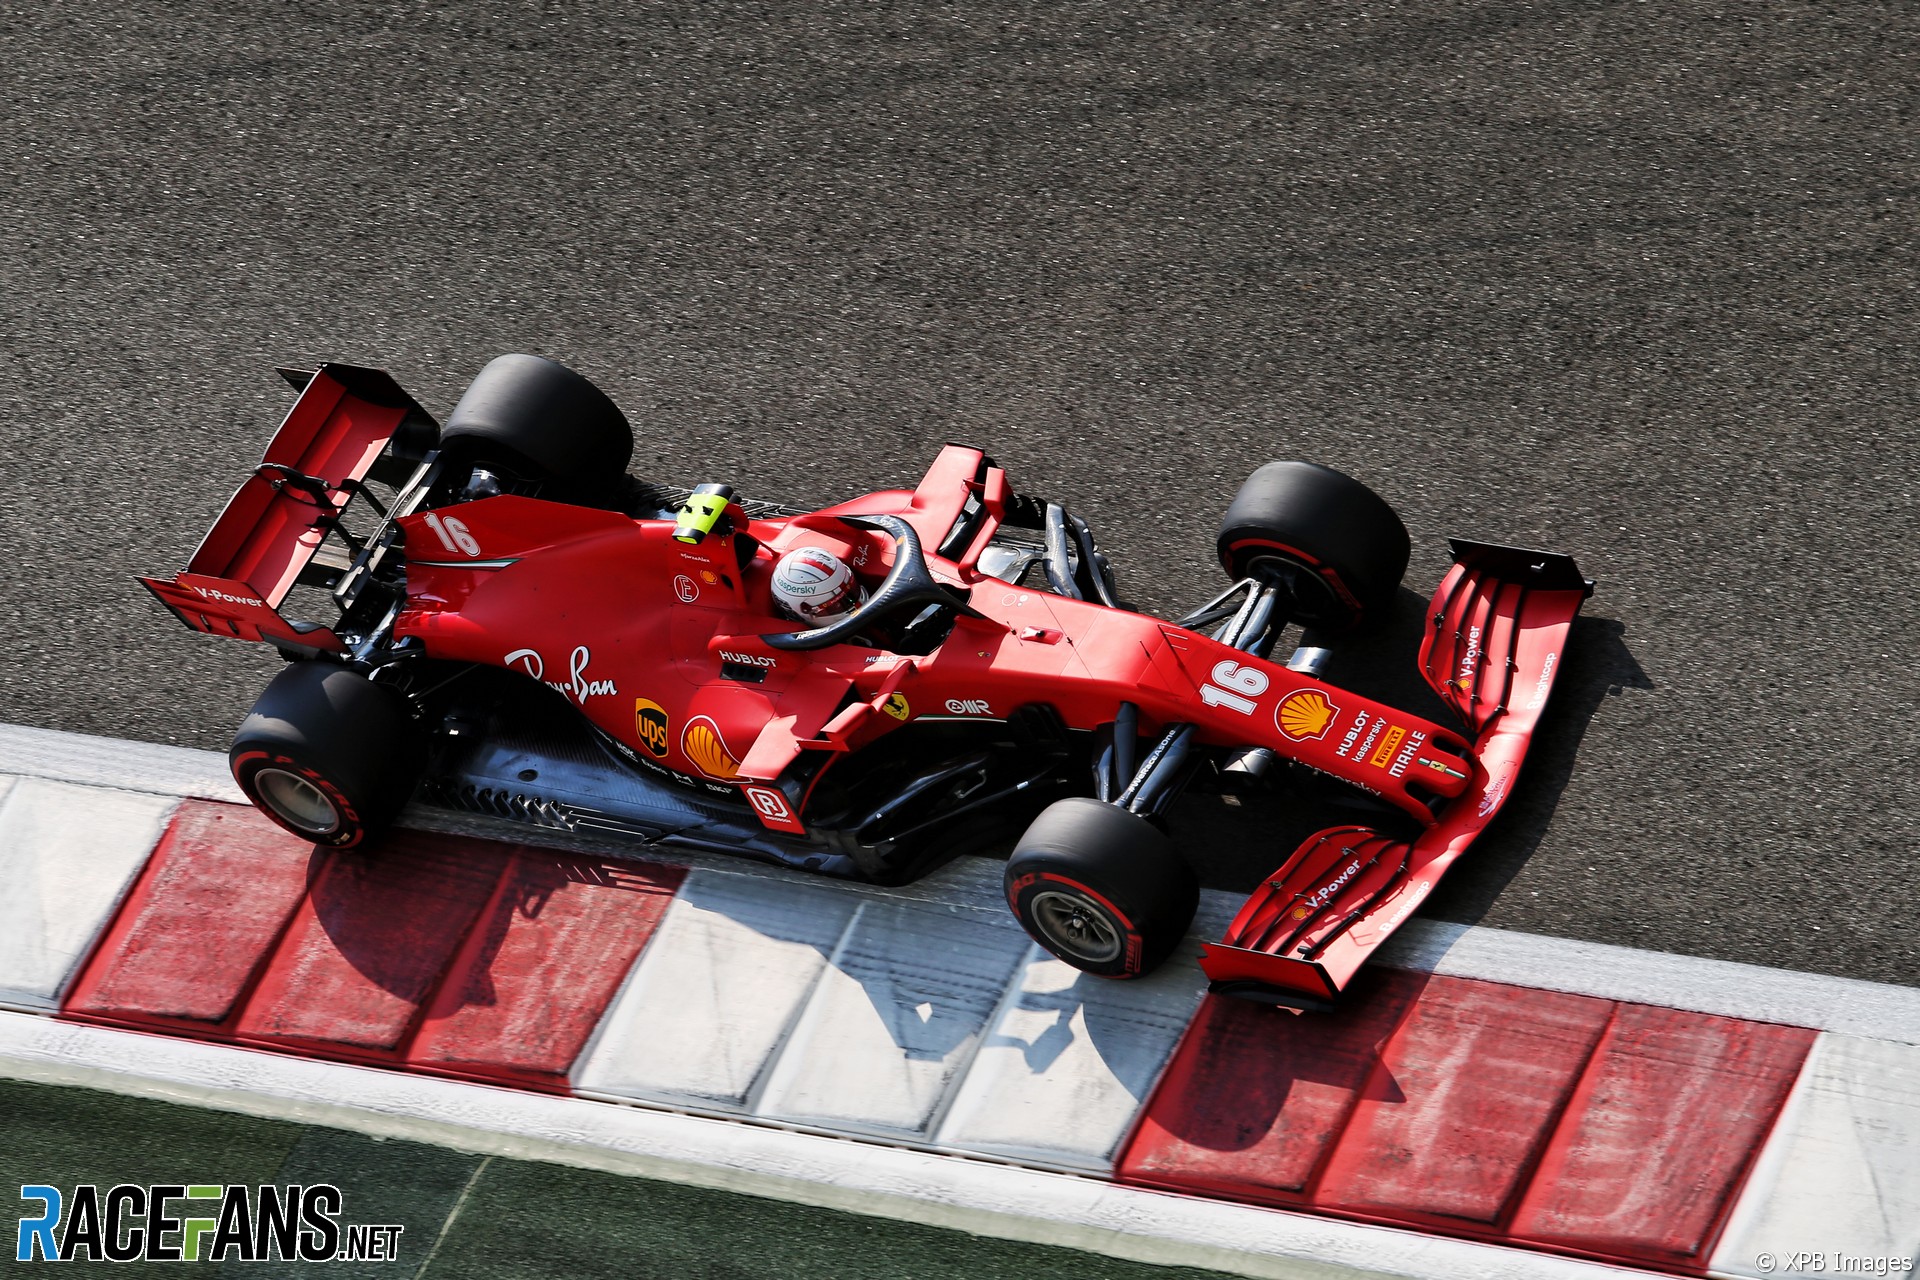 Charles Leclerc, Ferrari, Yas Marina, 2020